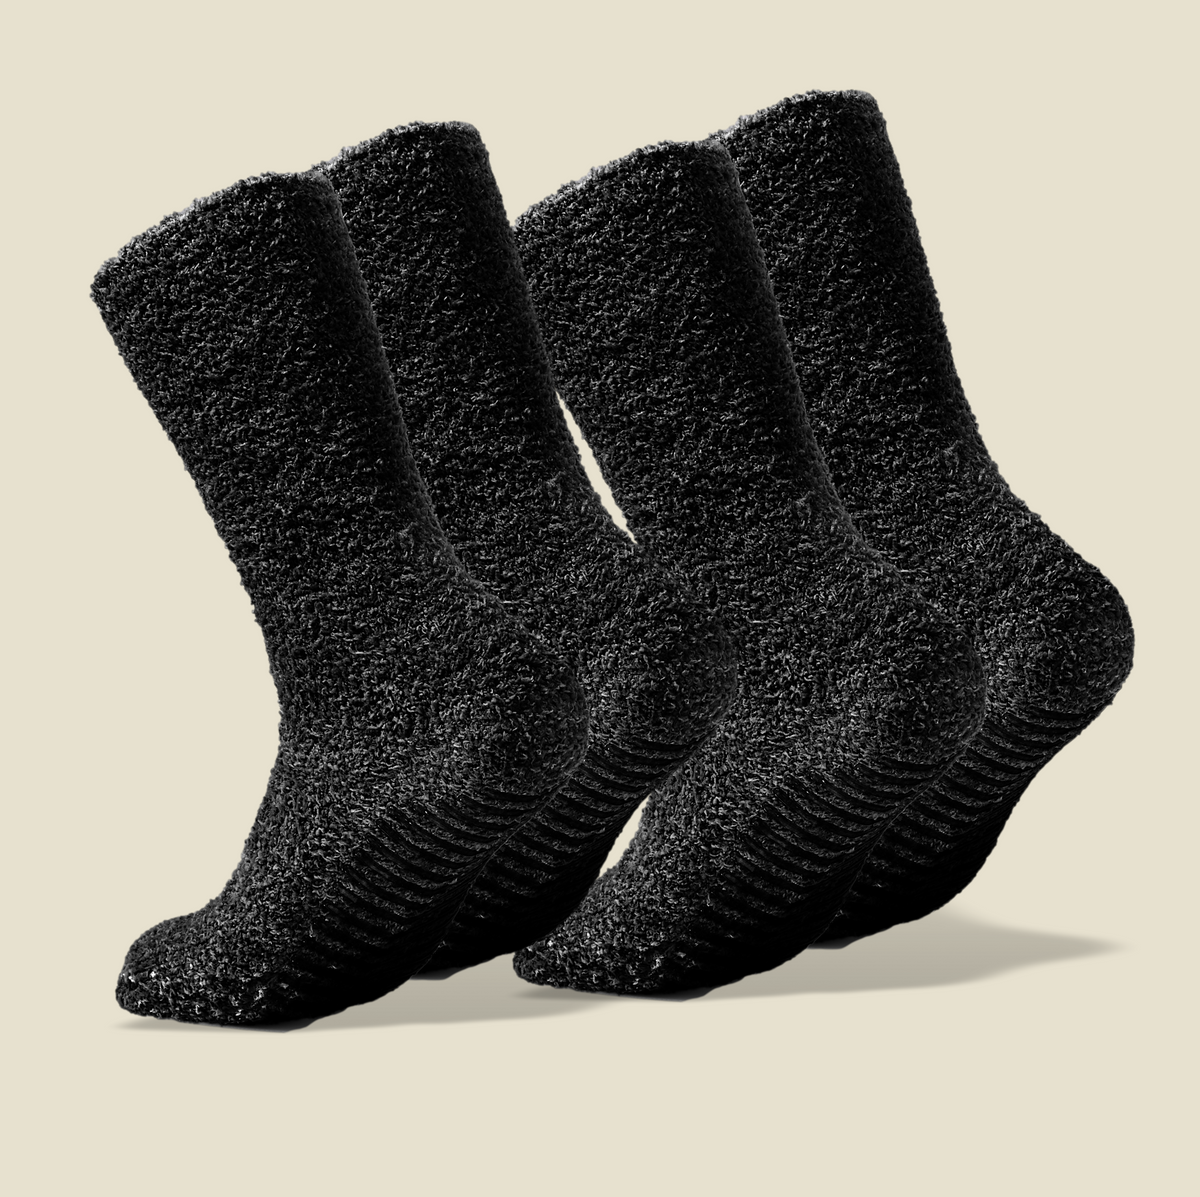 Dark Grey Fuzzy Socks with Grips for Men x2 Pairs - Gripjoy Socks